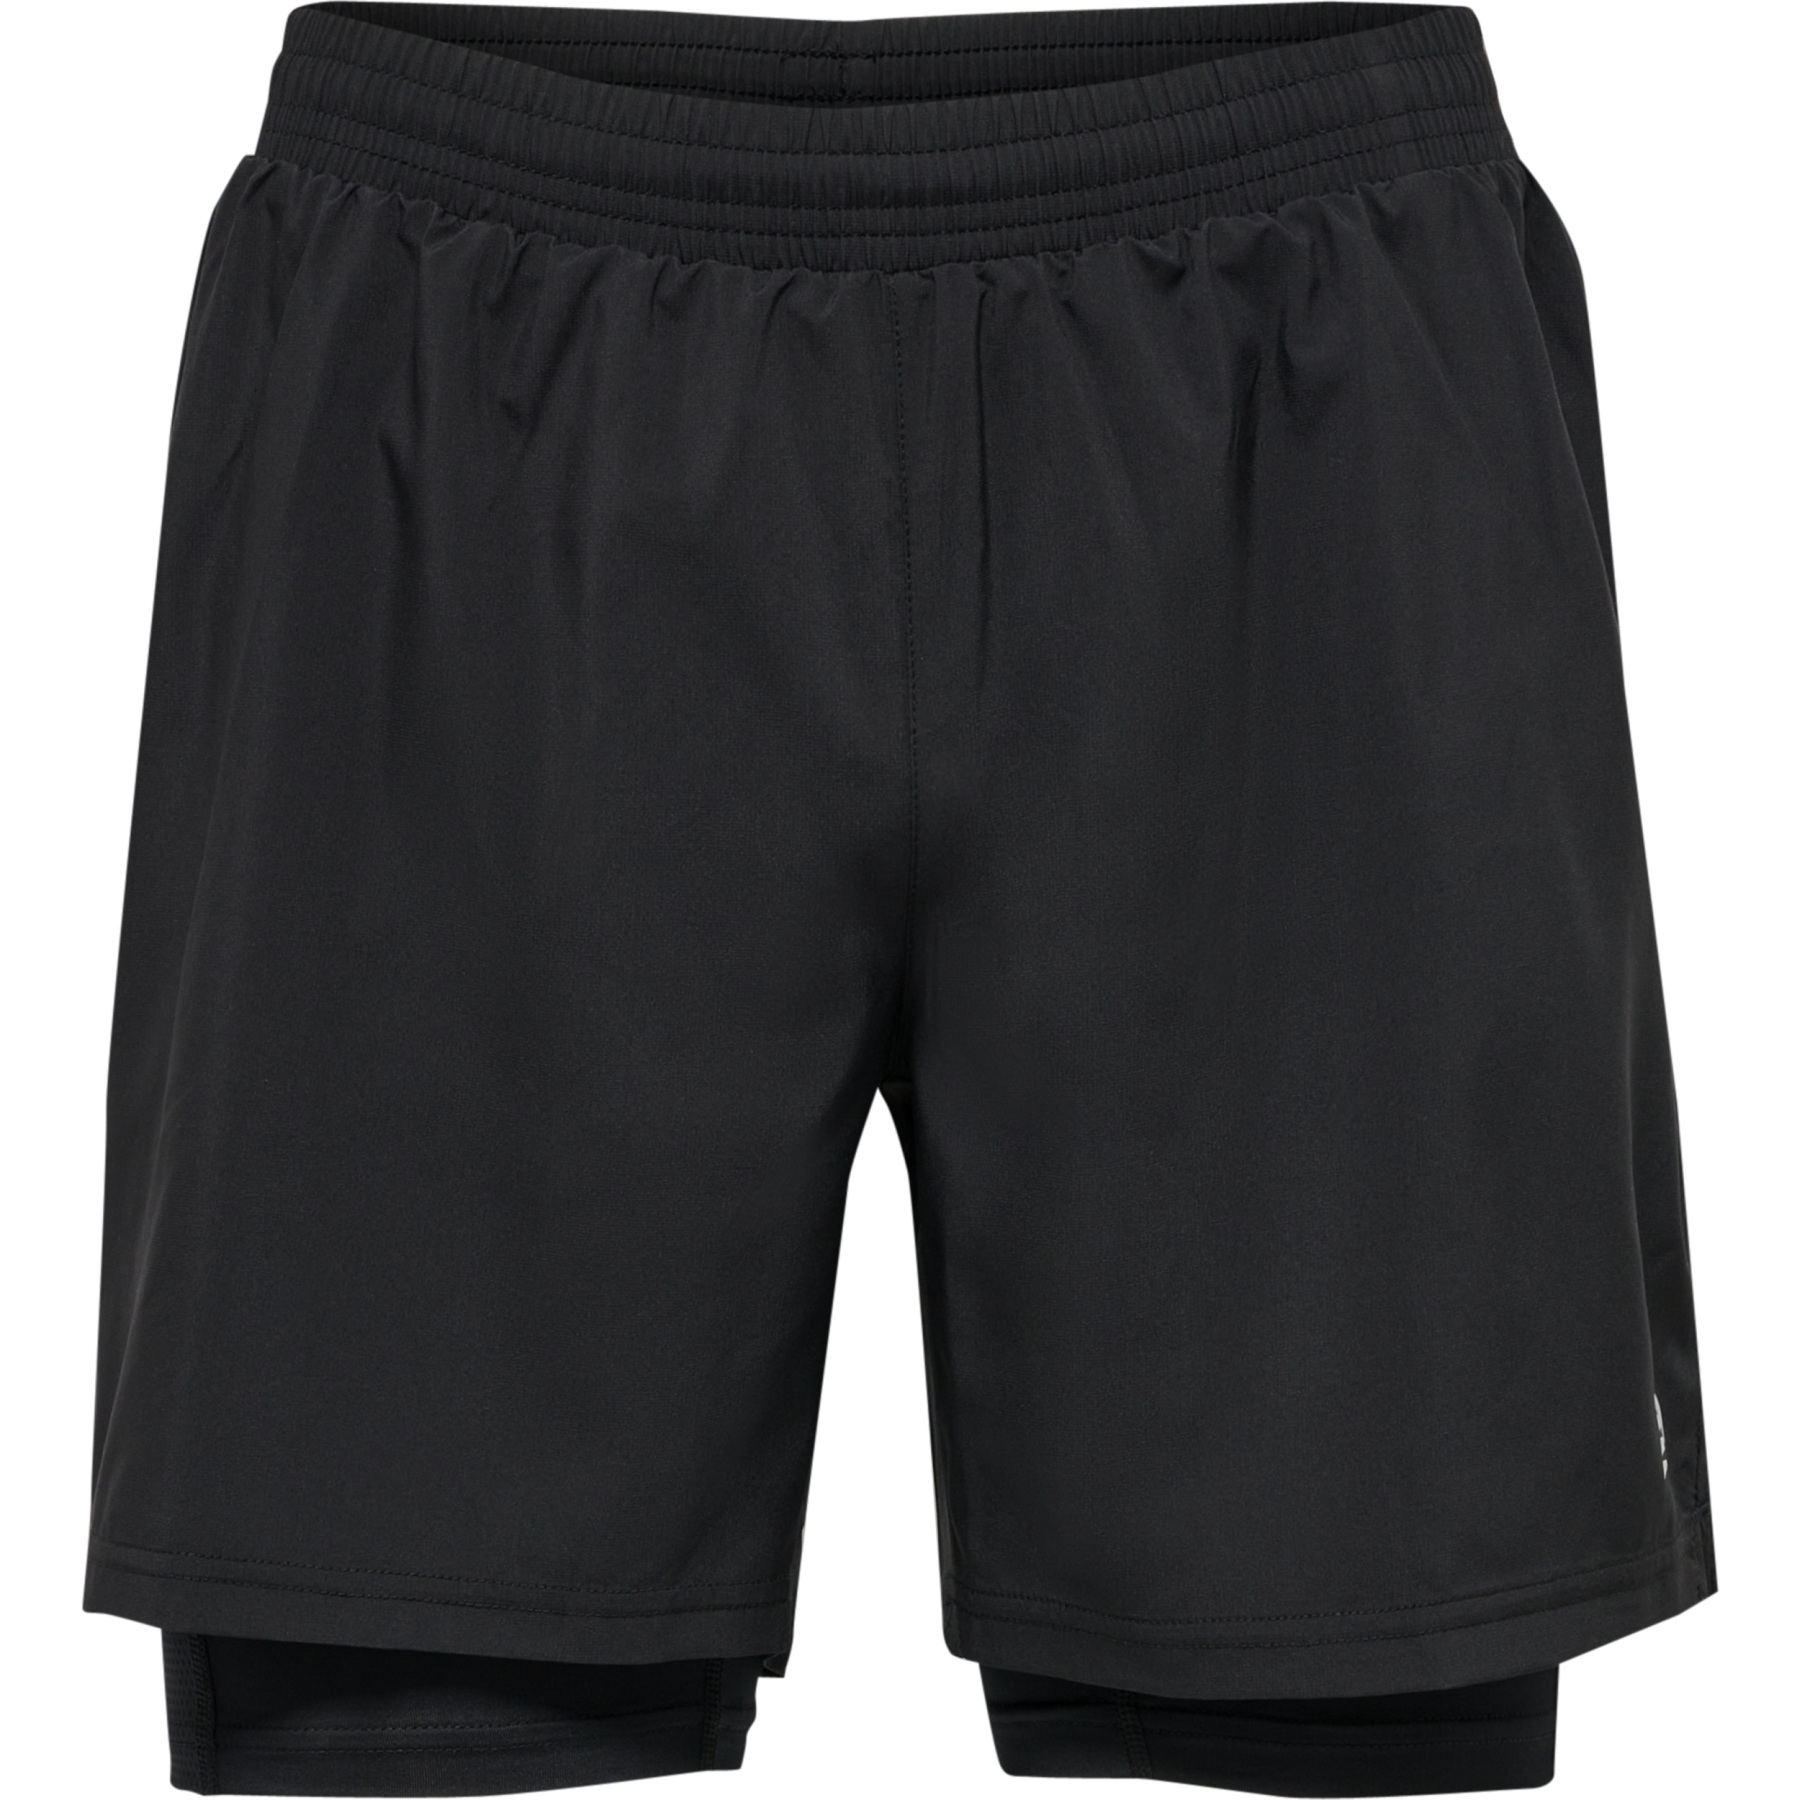 Produktbild von Newline Kansas 2-In-1 Shorts - schwarz